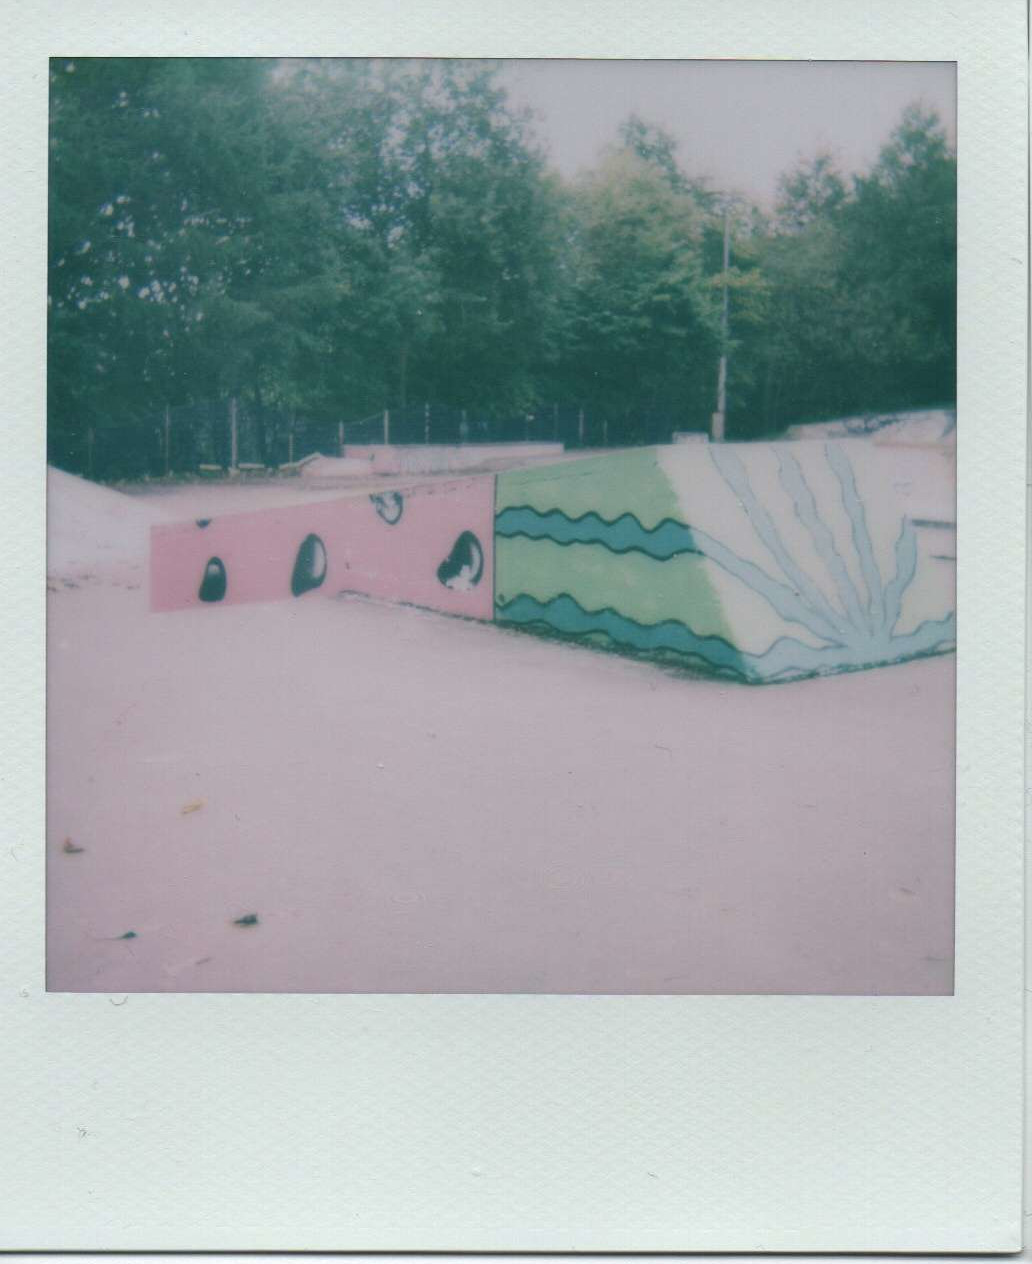 a watermelon slice in the skatepark